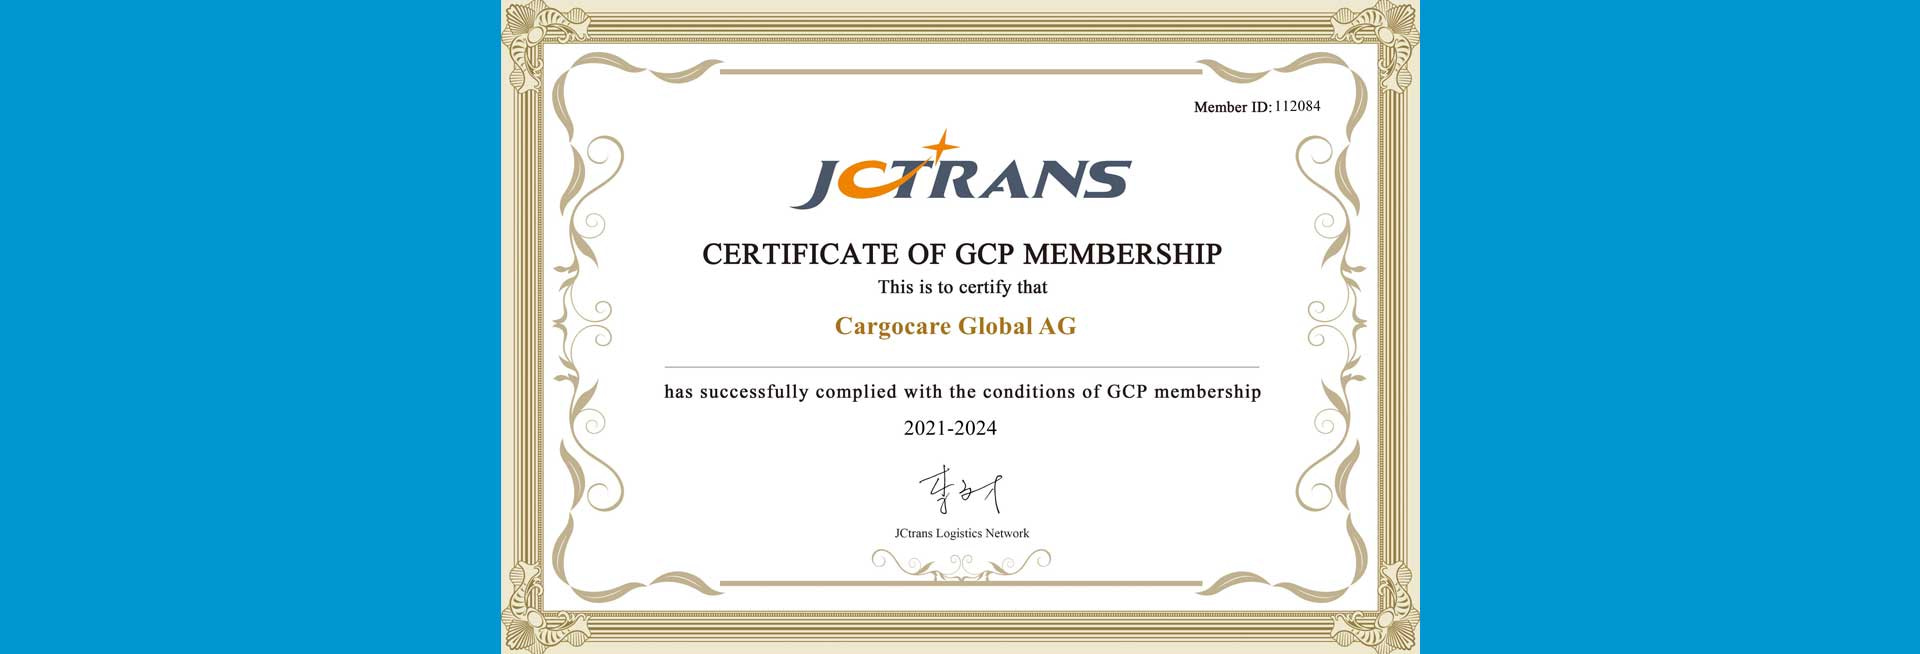 JCtrans Certificate of GCP Membership 1